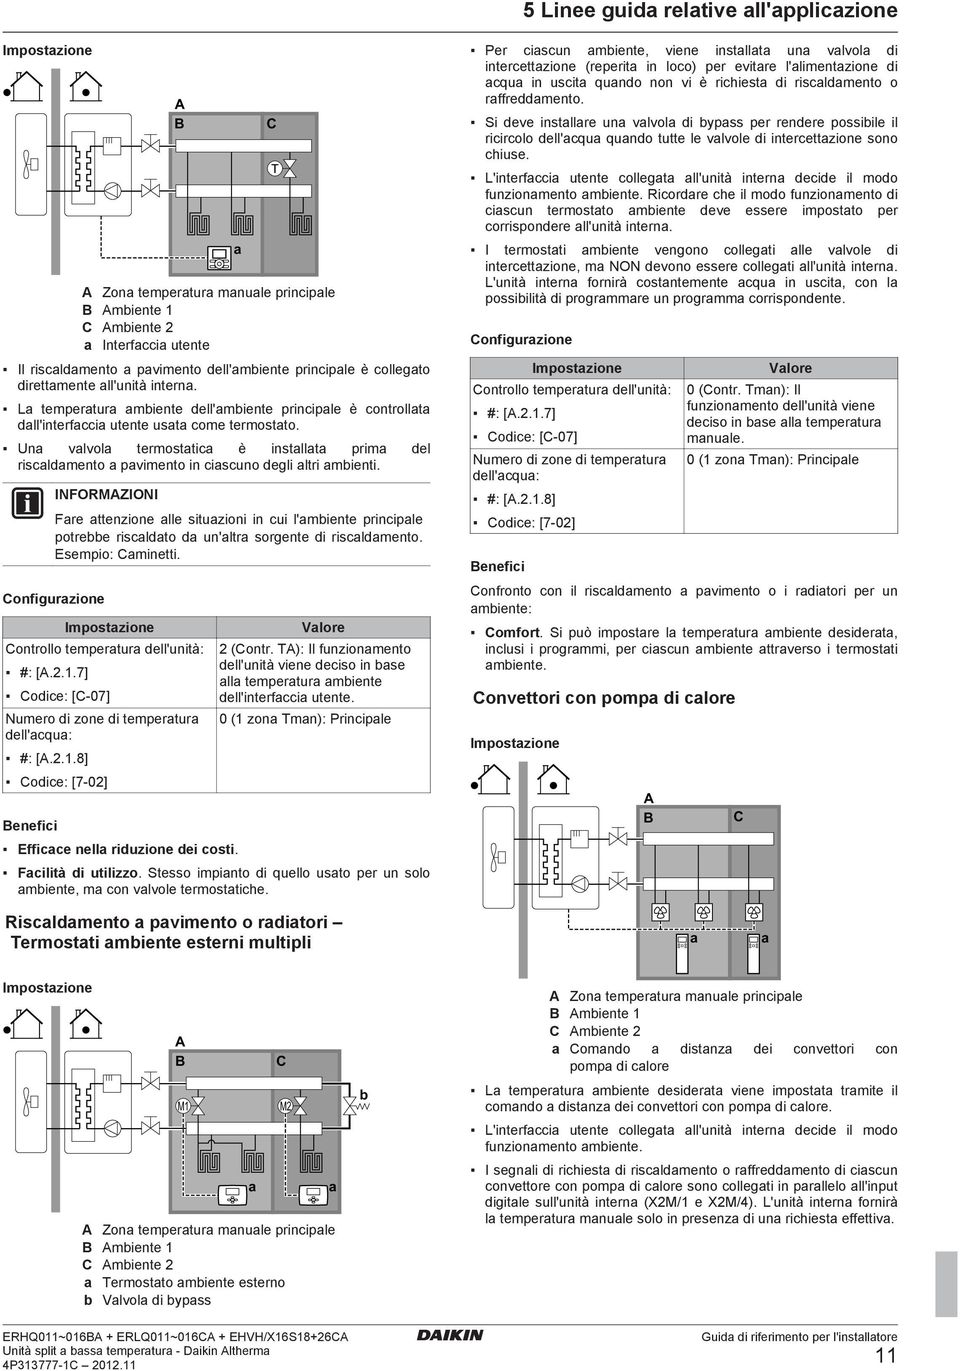 Un vlvol termosttic è instllt prim del riscldmento pvimento in ciscuno degli ltri mbienti.